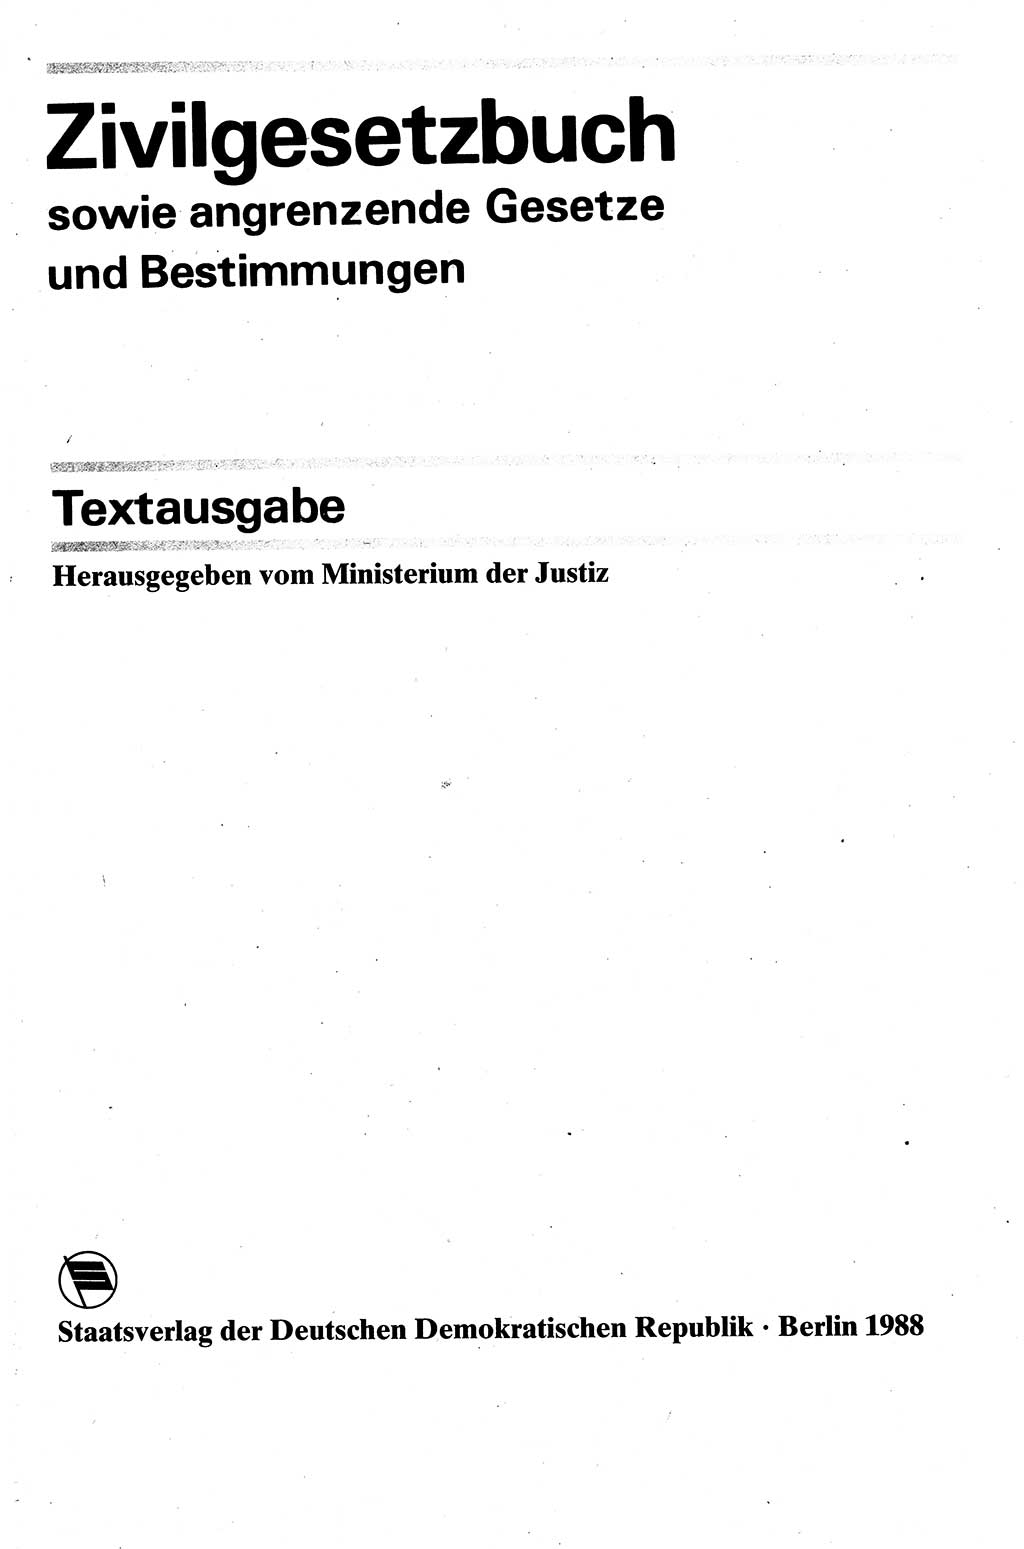 Zivilgesetzbuch (ZVG) sowie angrenzende Gesetze und Bestimmungen [Deutsche Demokratische Republik (DDR)] 1975, Seite 1 (ZGB Ges. Best. DDR 1975, S. 1)